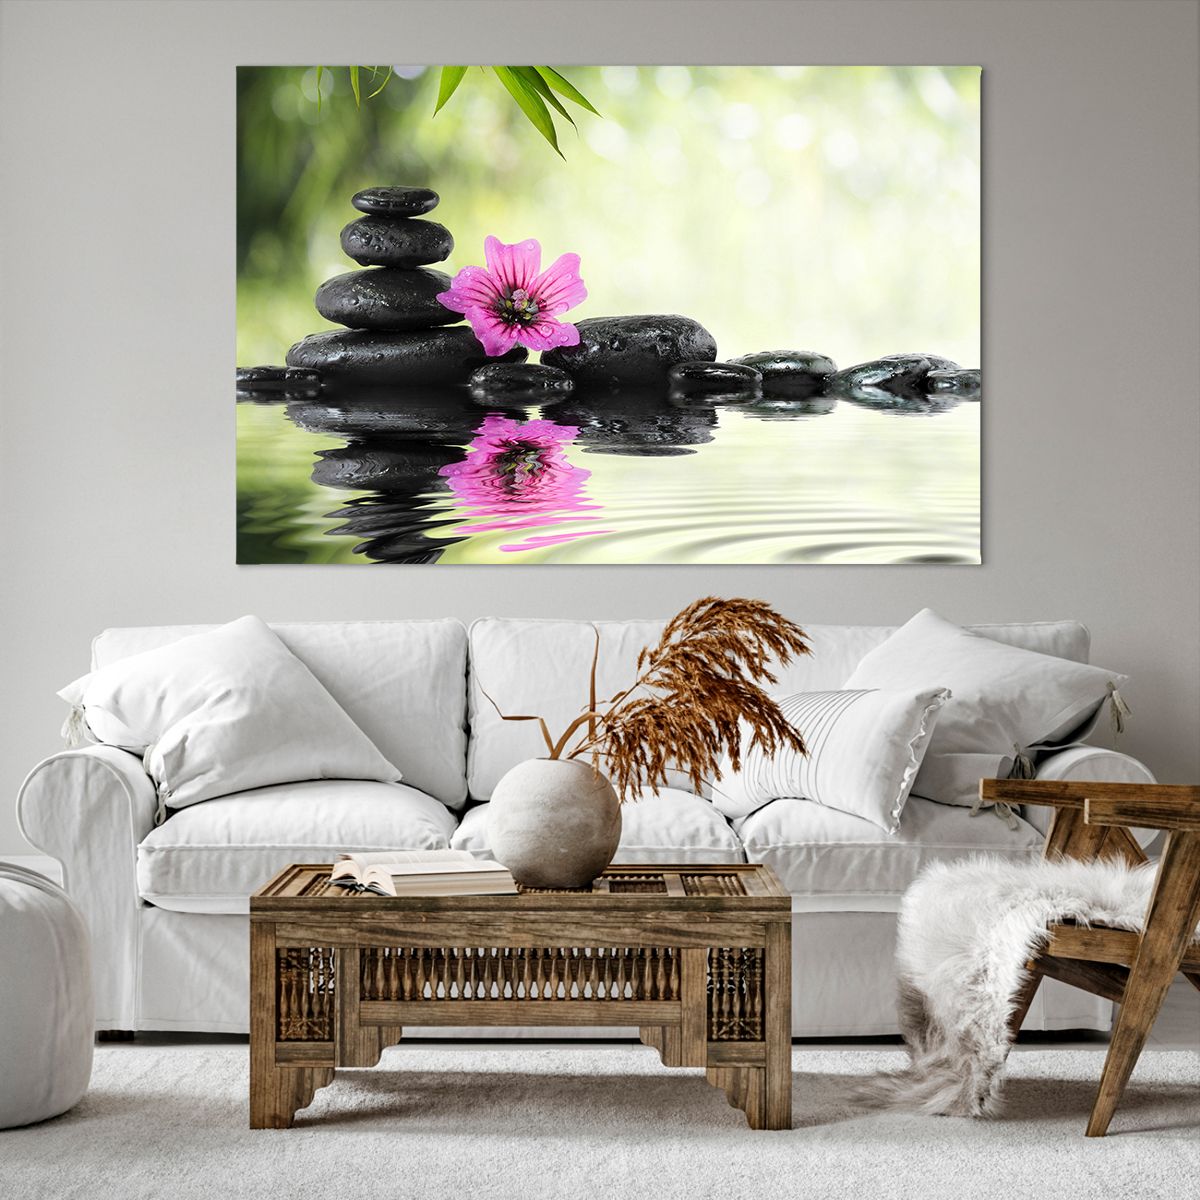 Bild auf Leinwand Blume, Bild auf Leinwand Kultur, Bild auf Leinwand Bambus, Bild auf Leinwand Asien, Bild auf Leinwand Spa